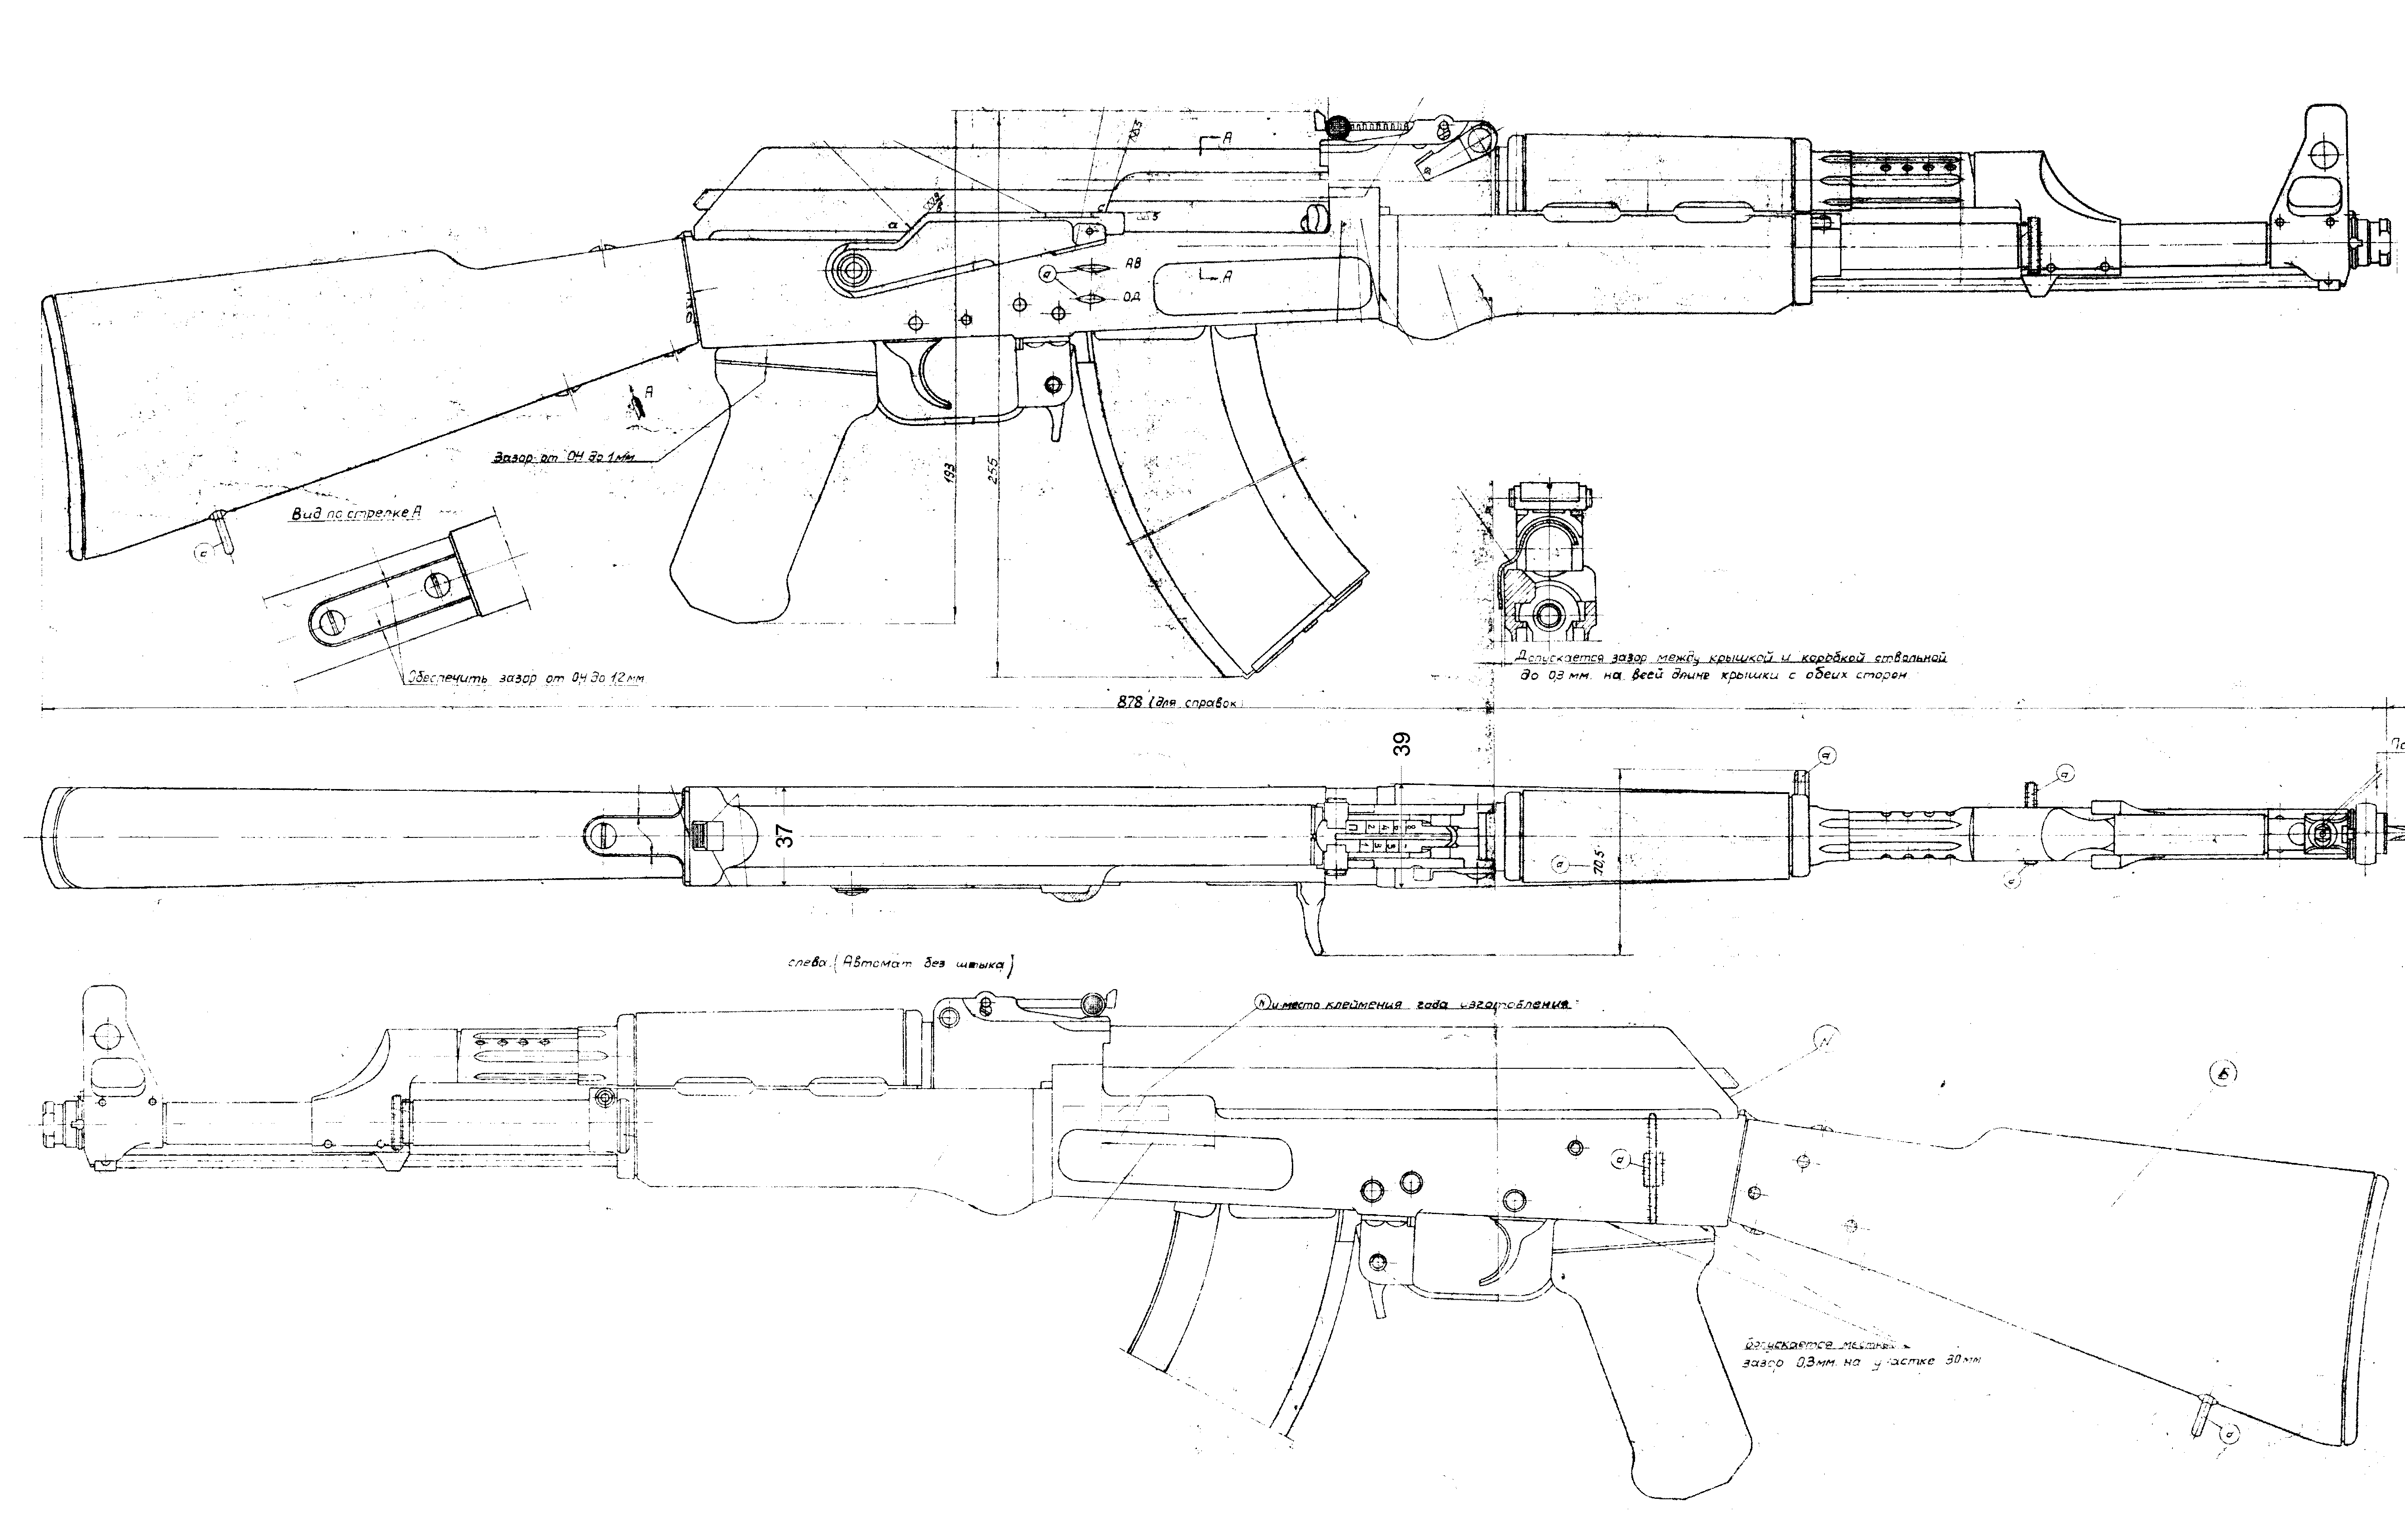 AK-47 blueprint